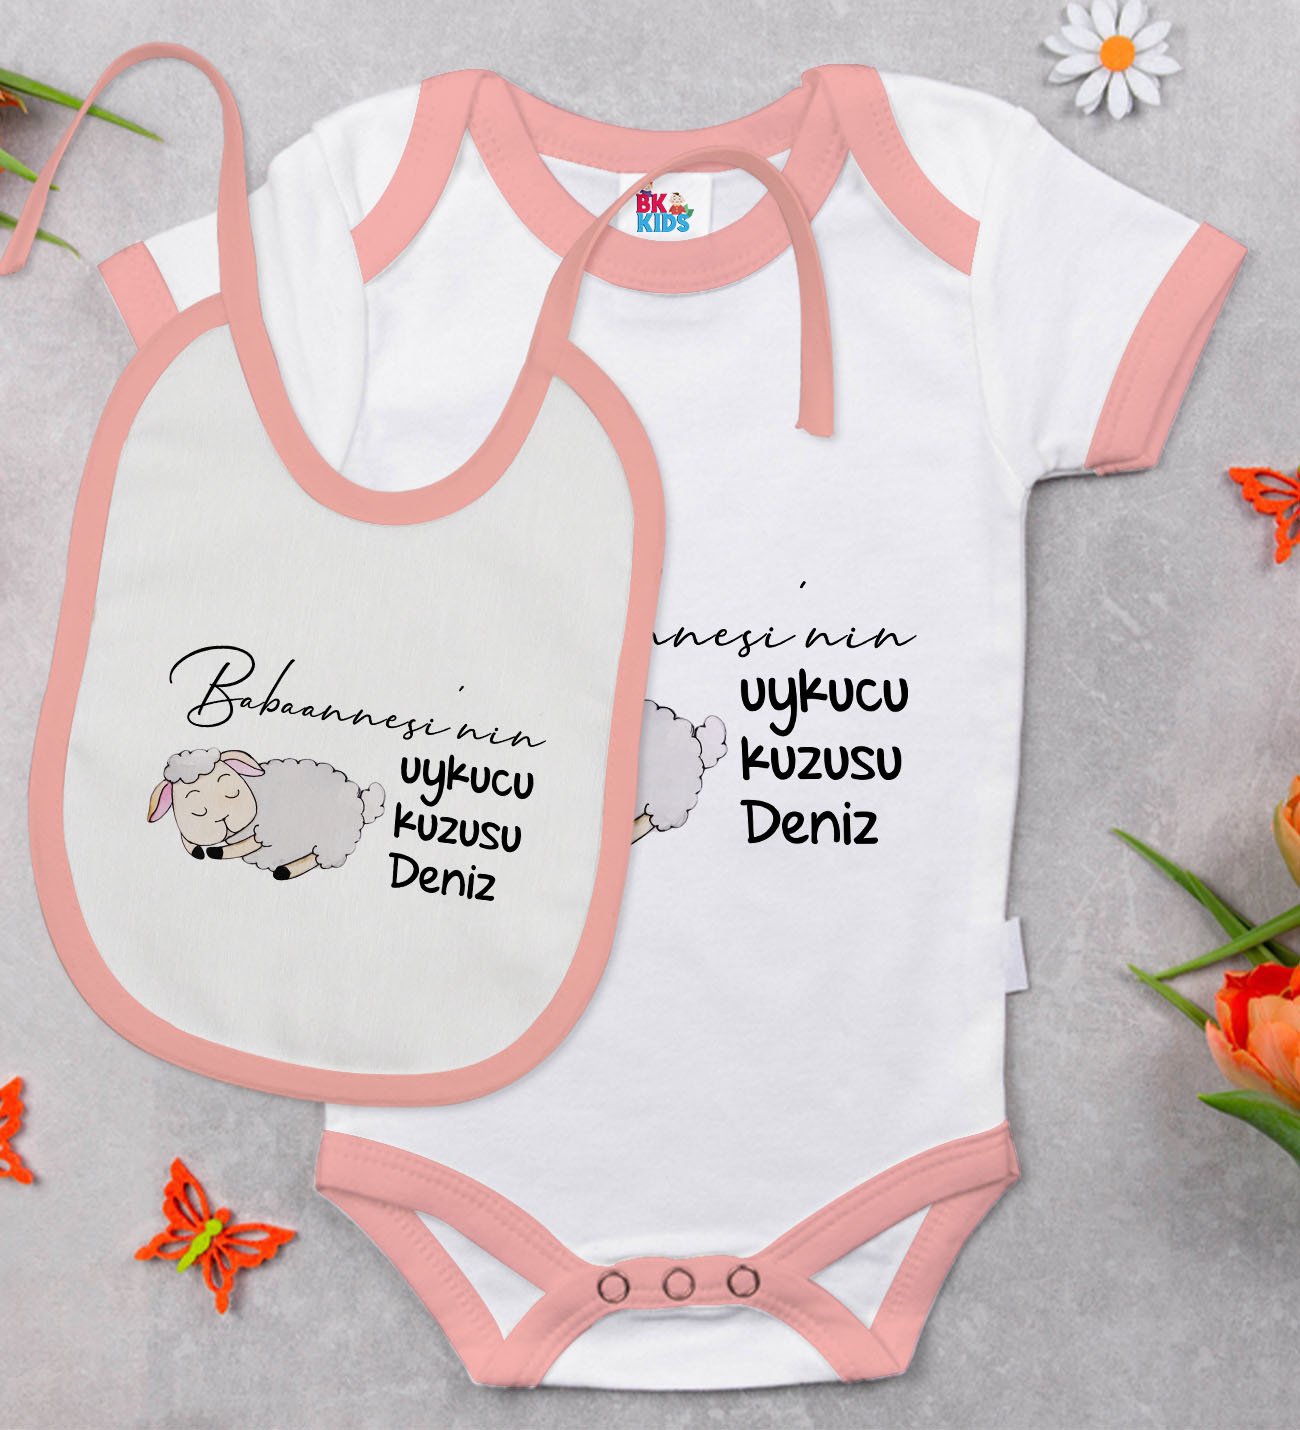 BK Kids Kişiye Özel Babaannesinin Uykucu Kuzusu Tasarımlı Pembe Bebek Body Zıbın ve Mama Önlüğü Hediye Seti